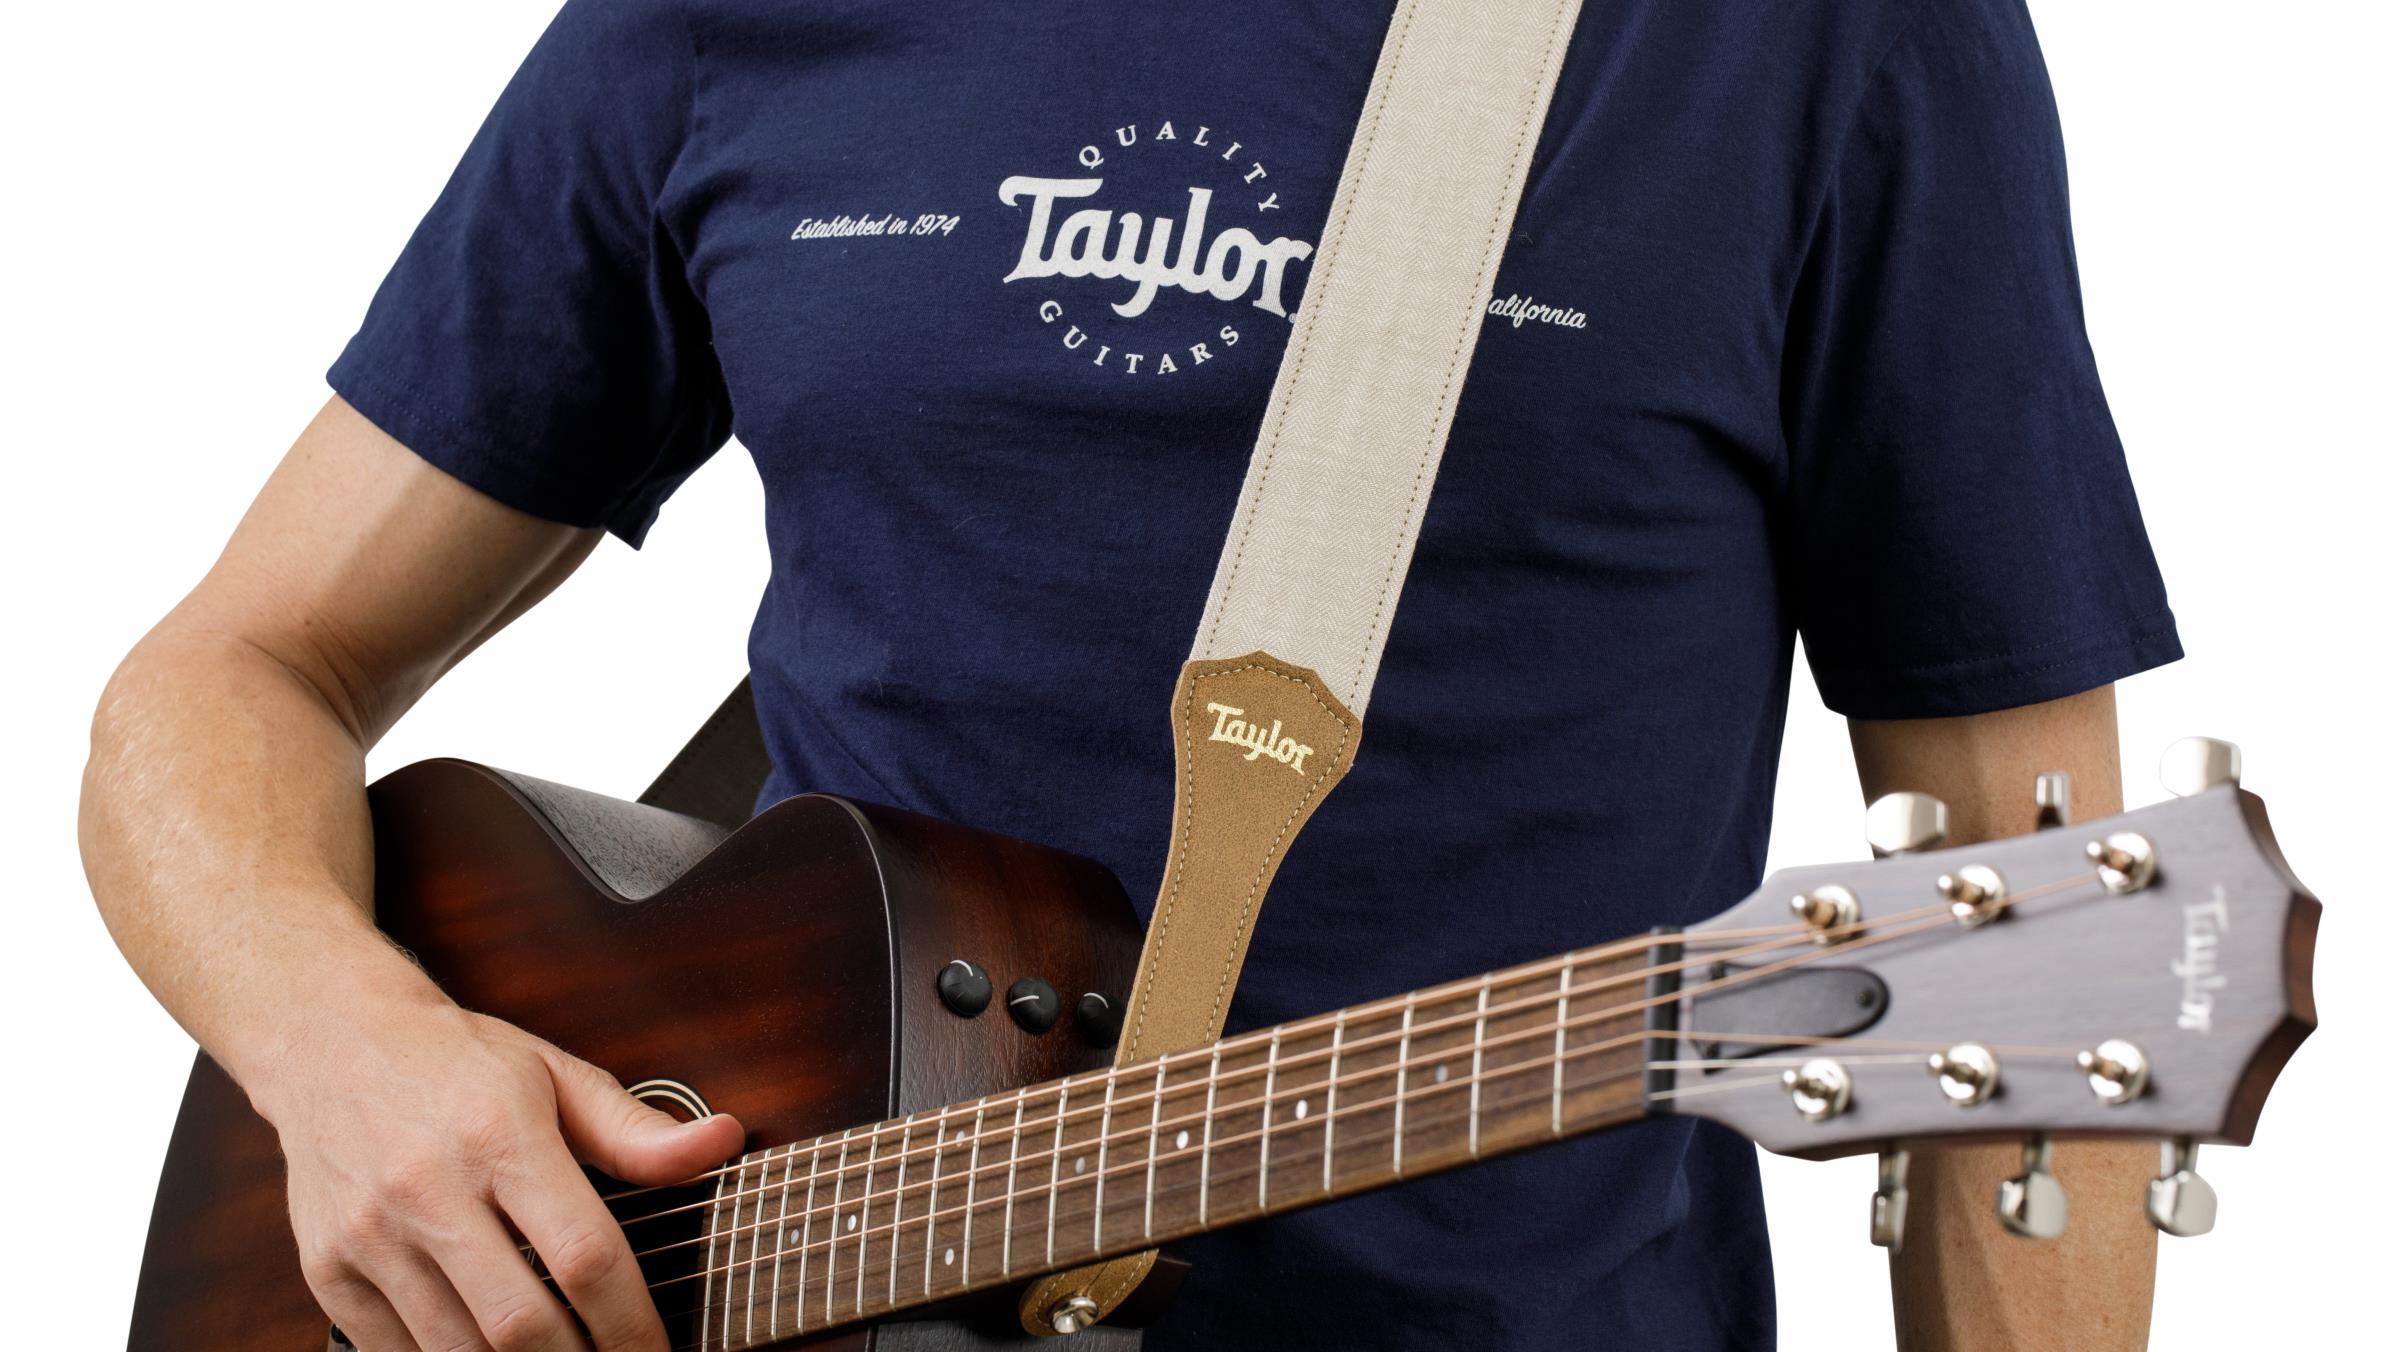 TAYLOR Vegan Guitar Strap,Hgbn Hemp Cotton,White